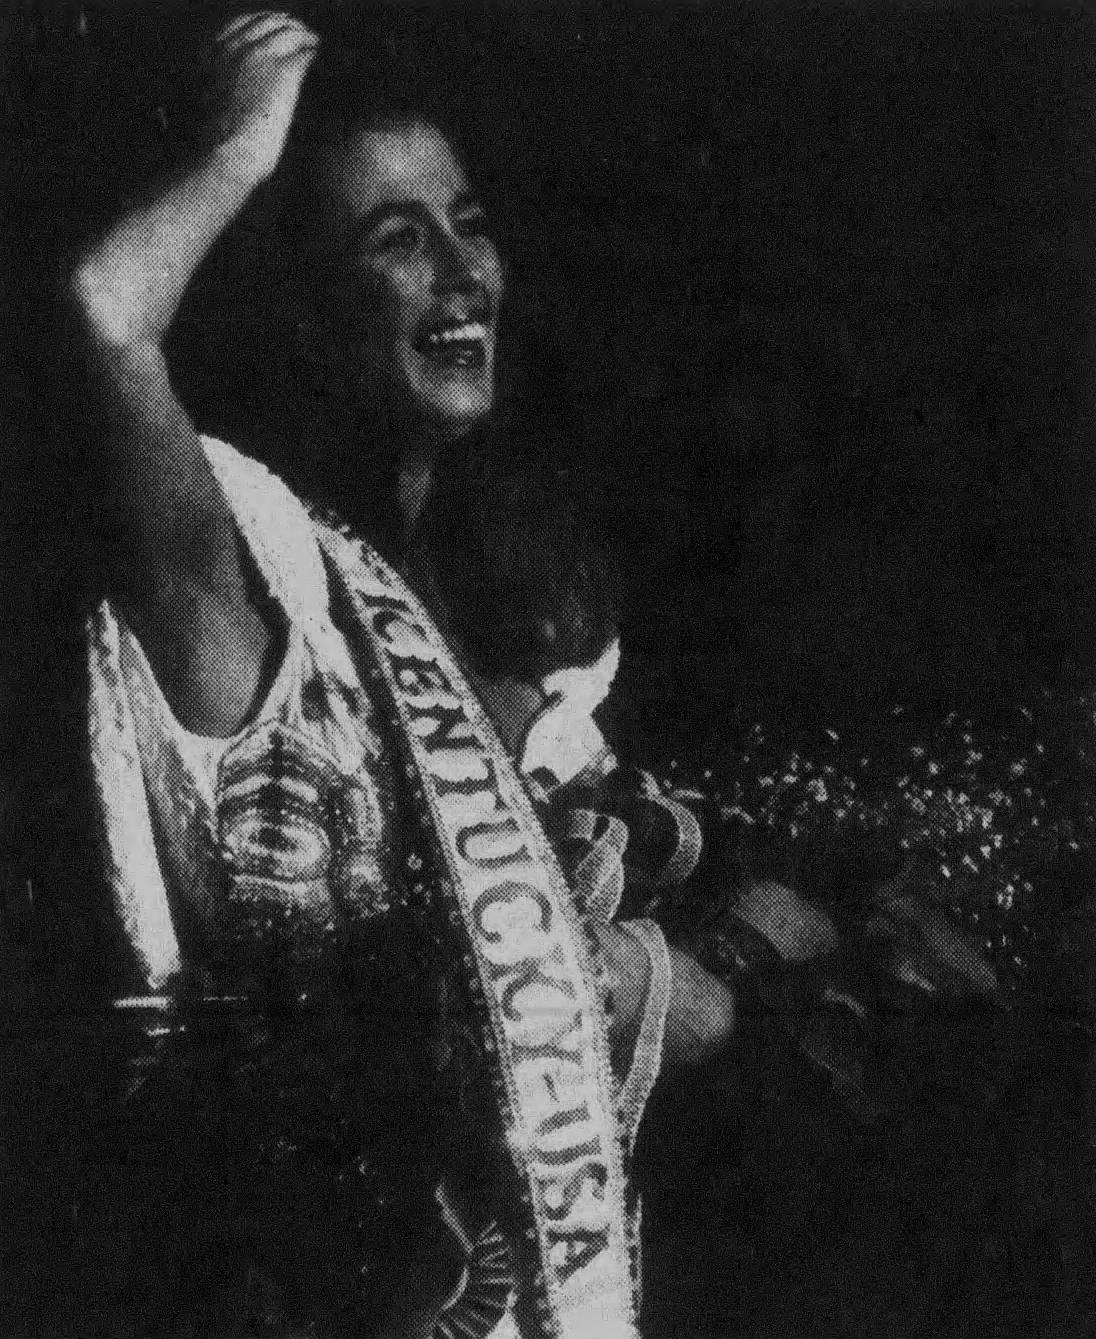 Karen Gibson takes her first walk as Miss Kentucky USA 1993